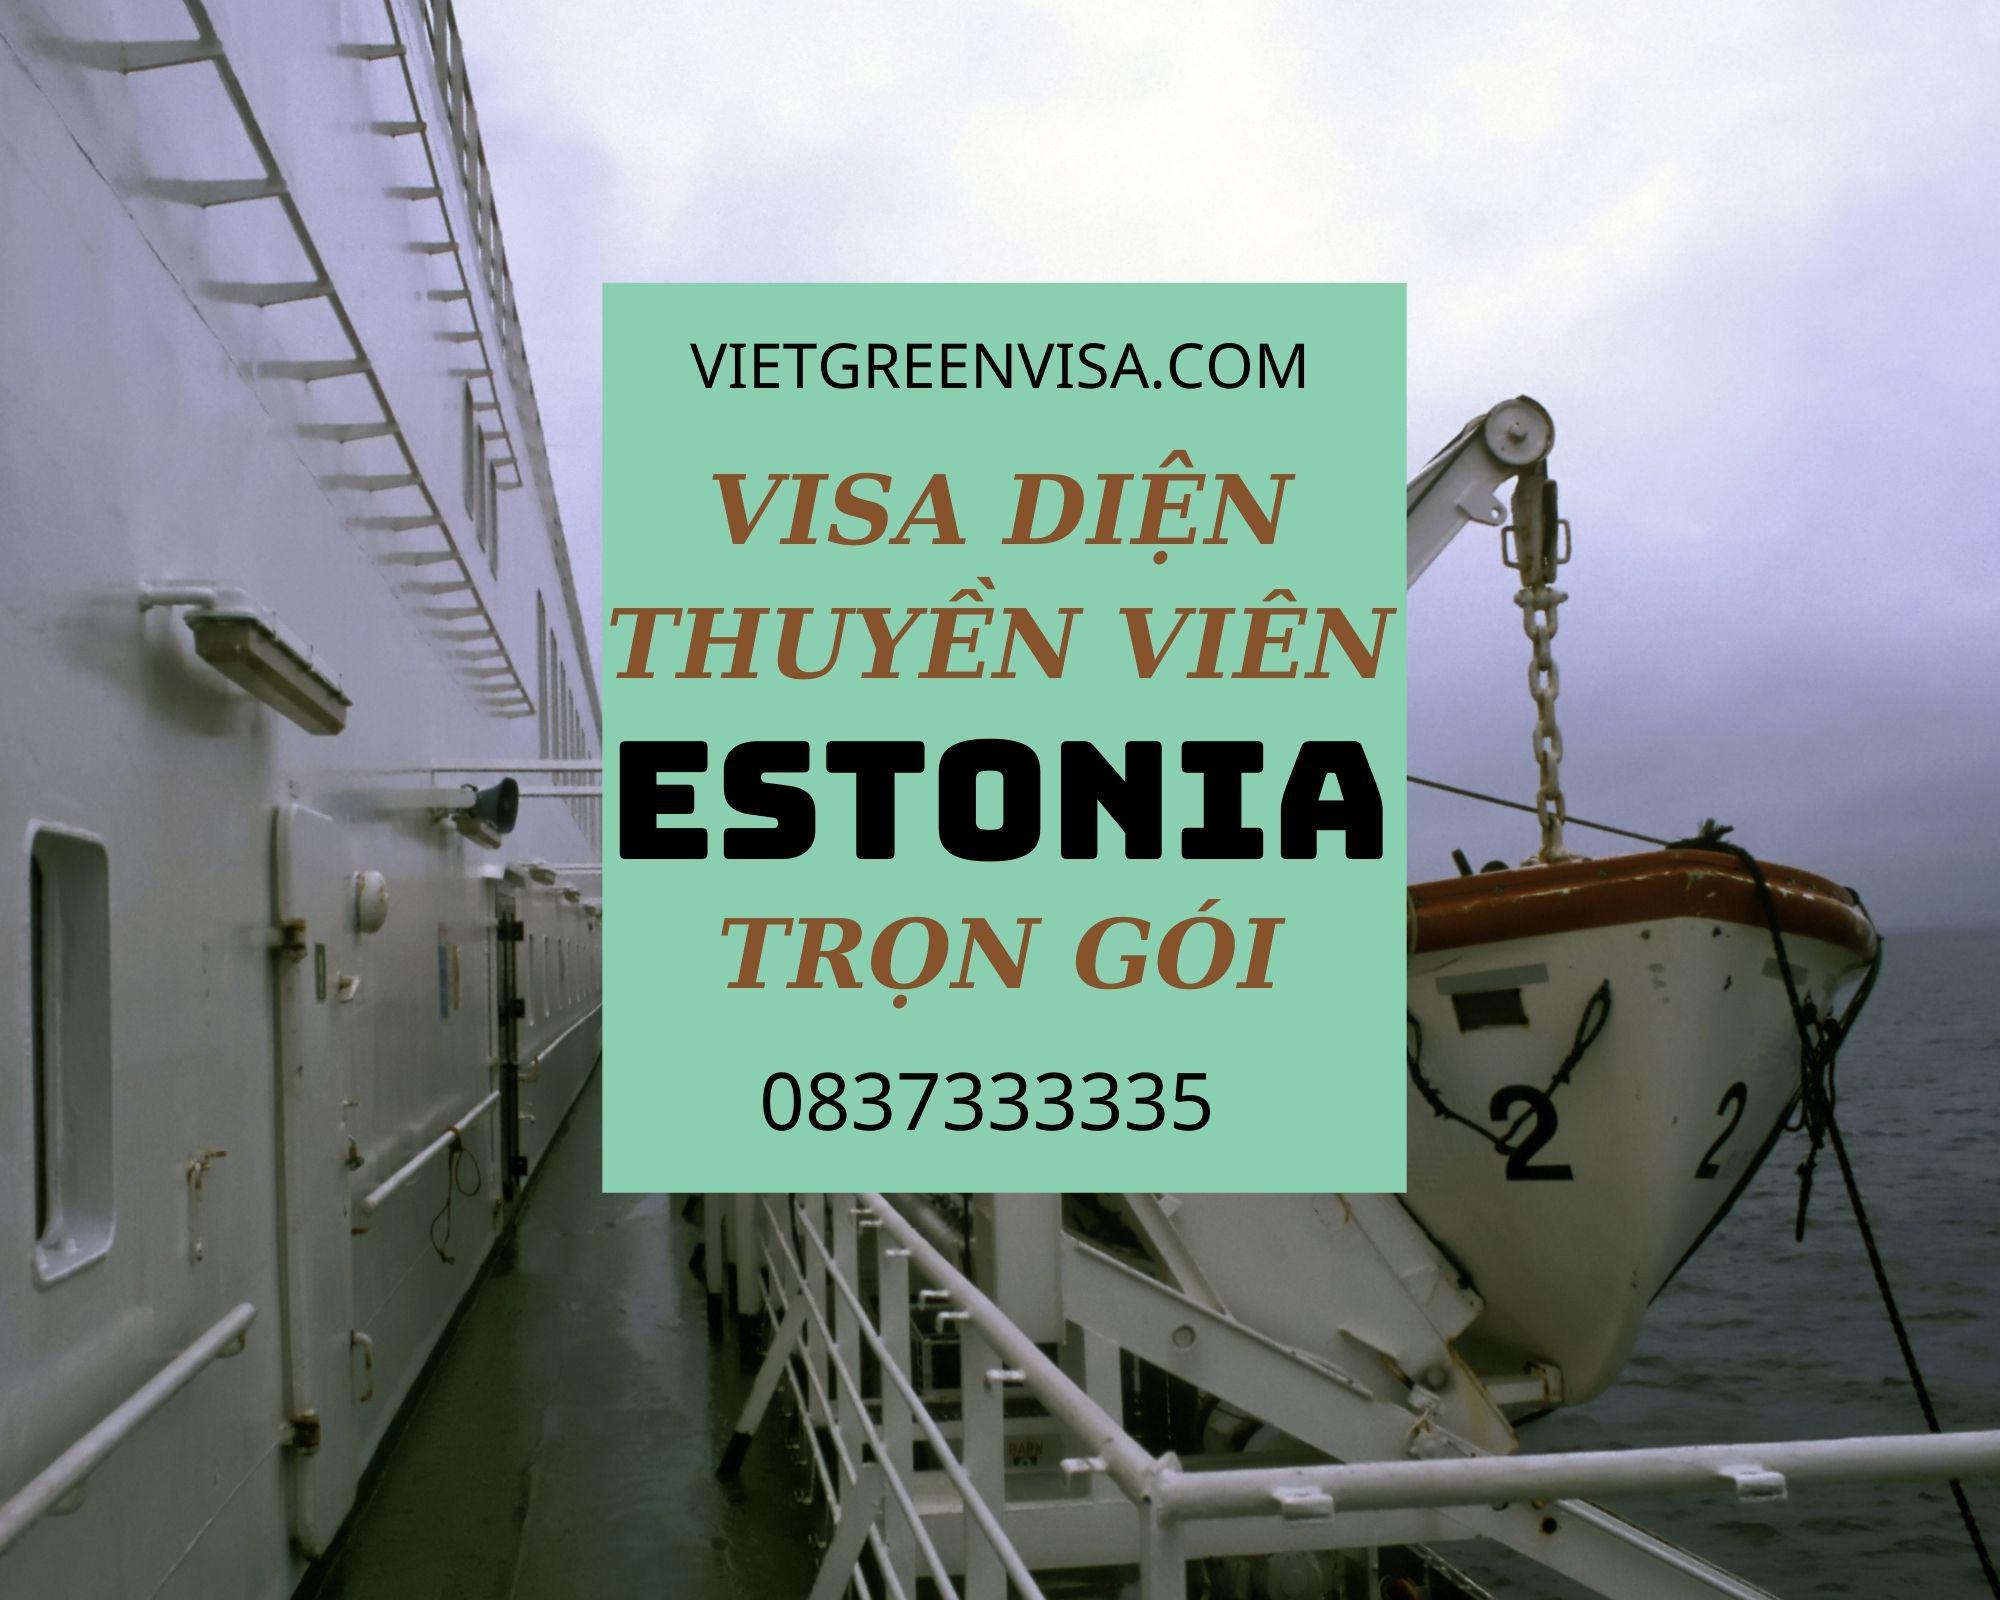 Hỗ trợ xử lý visa Estonia bị từ chối nhanh gọn